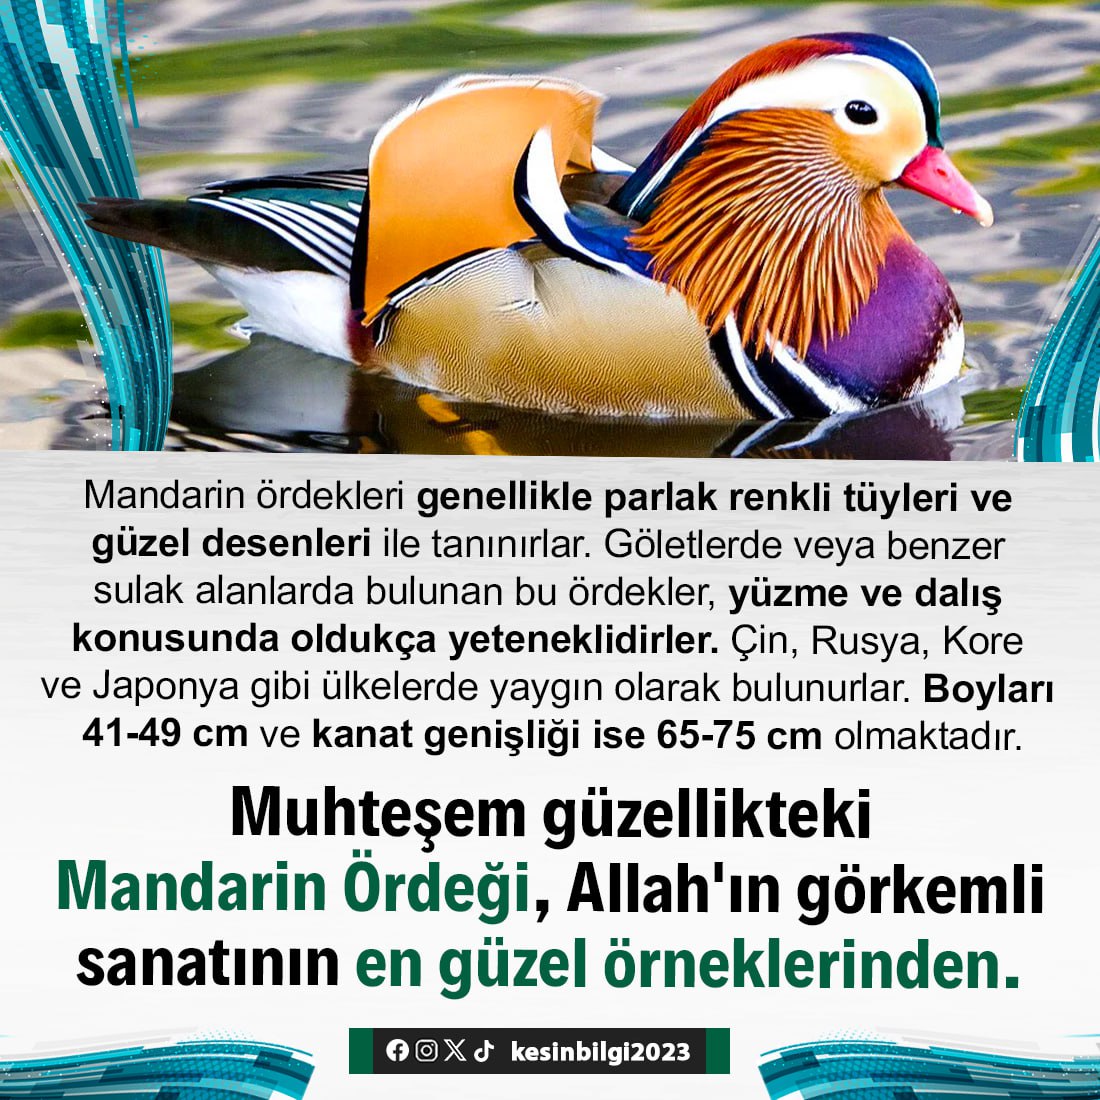 Mandarin ördekleri genellikle parlak renkli tüyleri ve güzel desenleri ile tanınırlar. Göletlerde veya benzer sulak alanlarda bulunan bu ördekler, yüzme ve dalış konusunda oldukça yeteneklidirler.